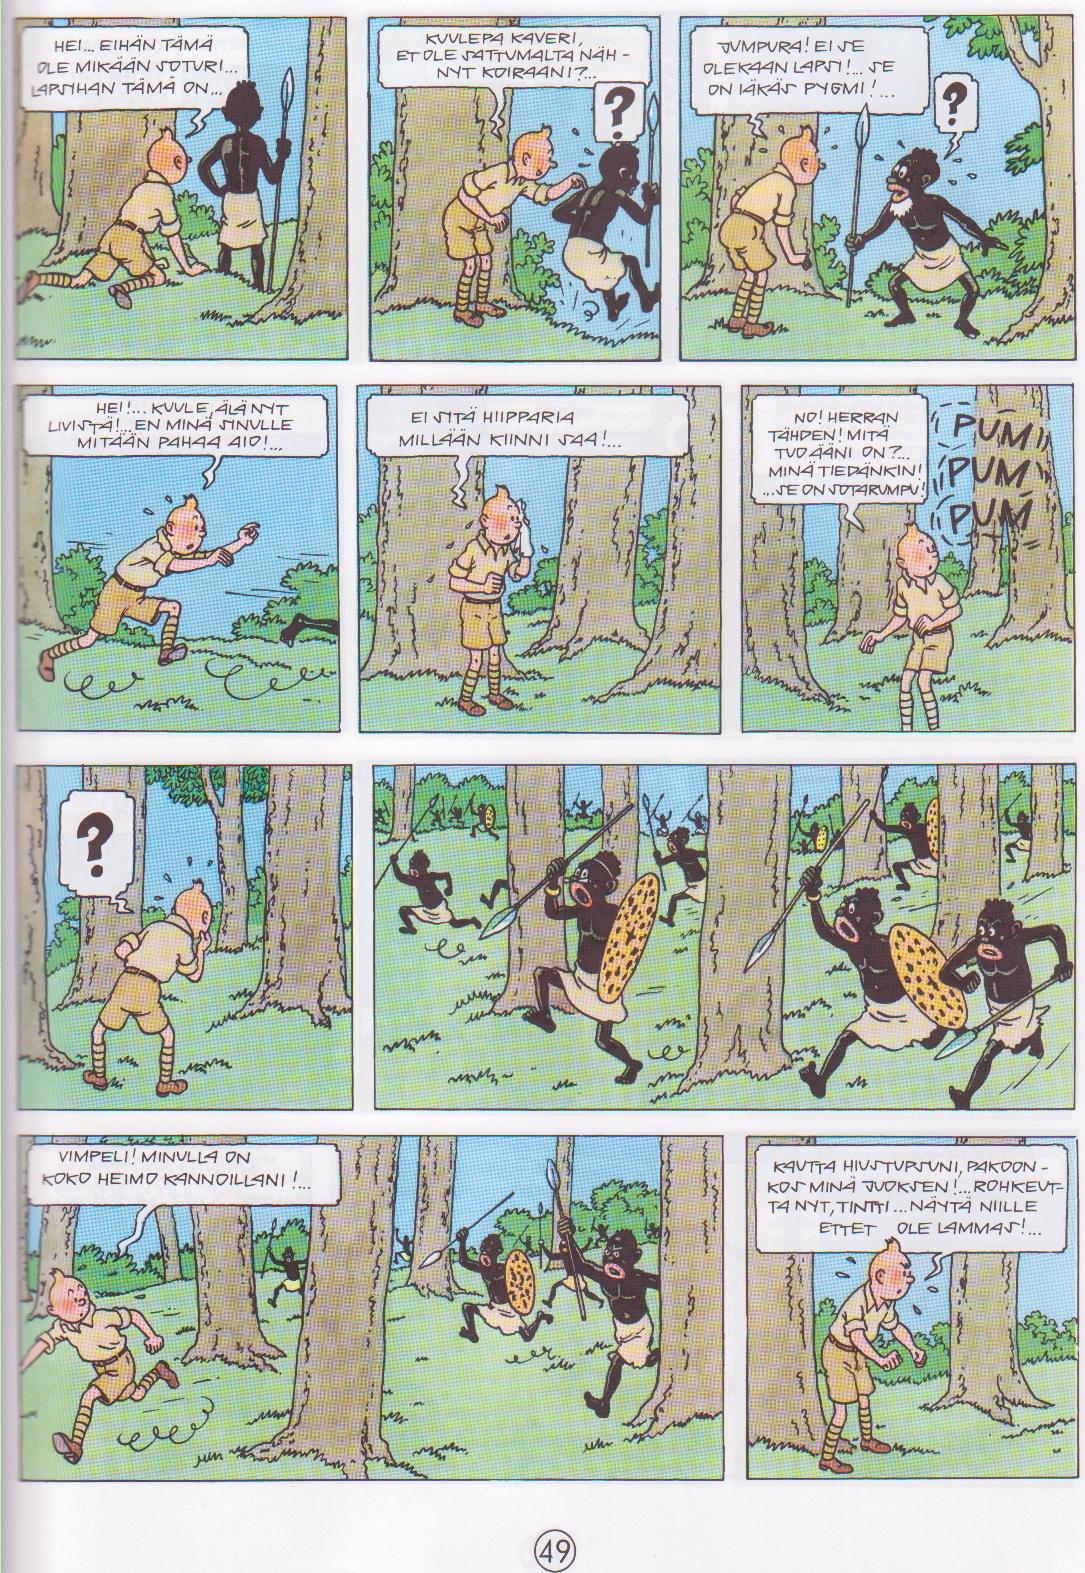 [Tintin+ja+pygmien+kohtaaminen.jpg]